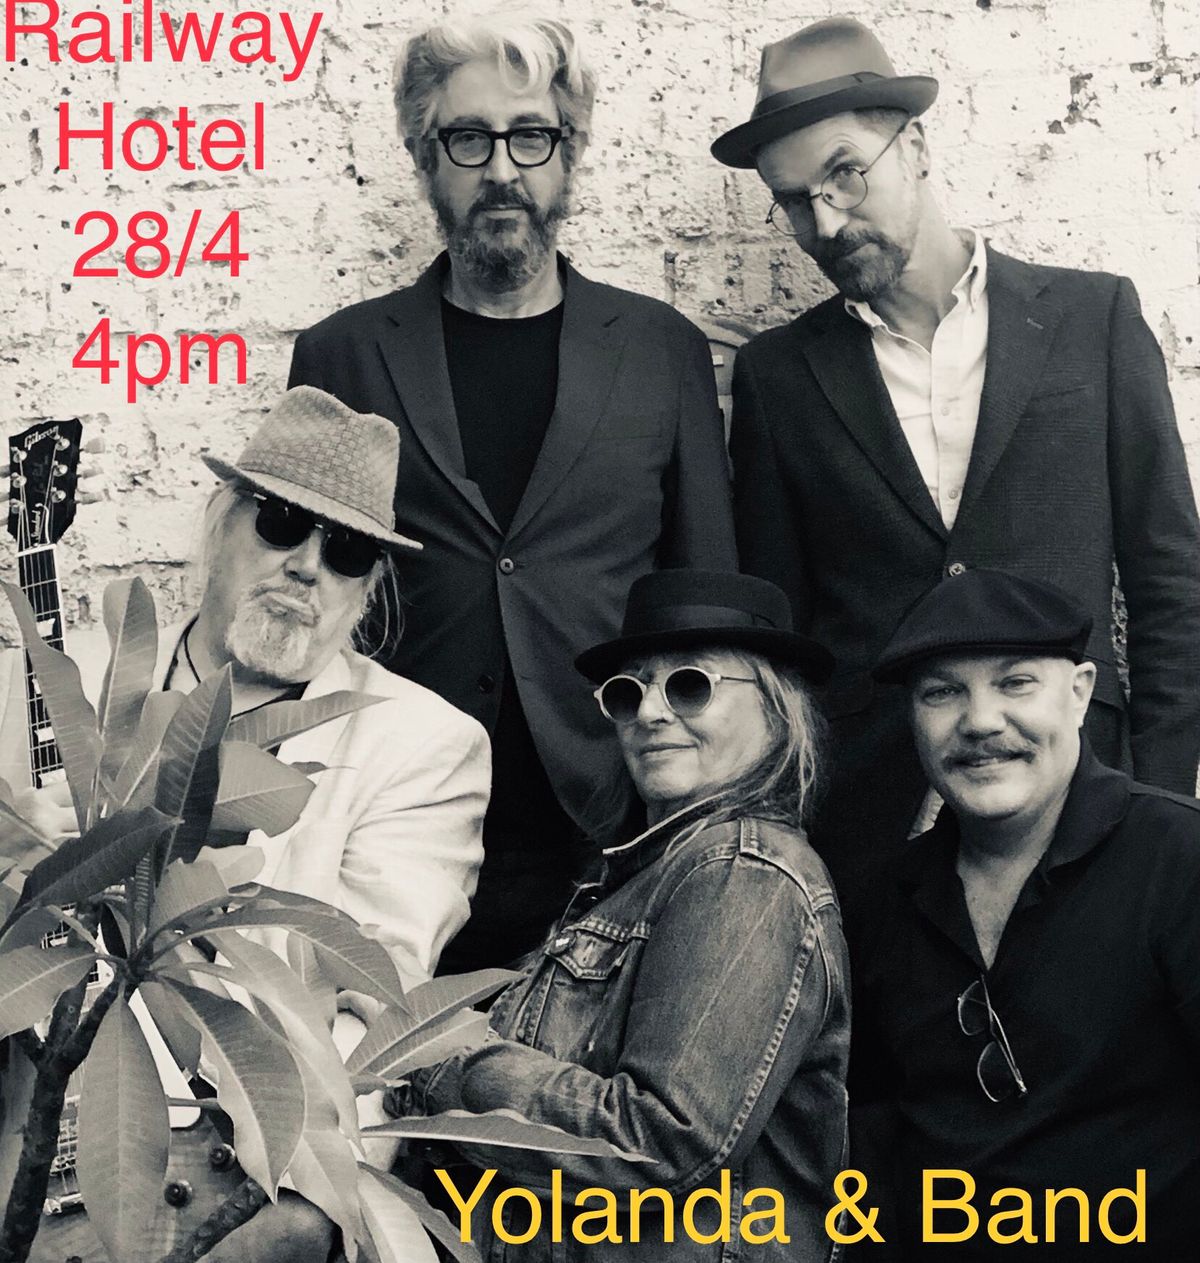 Yolanda & Band at The Railway 